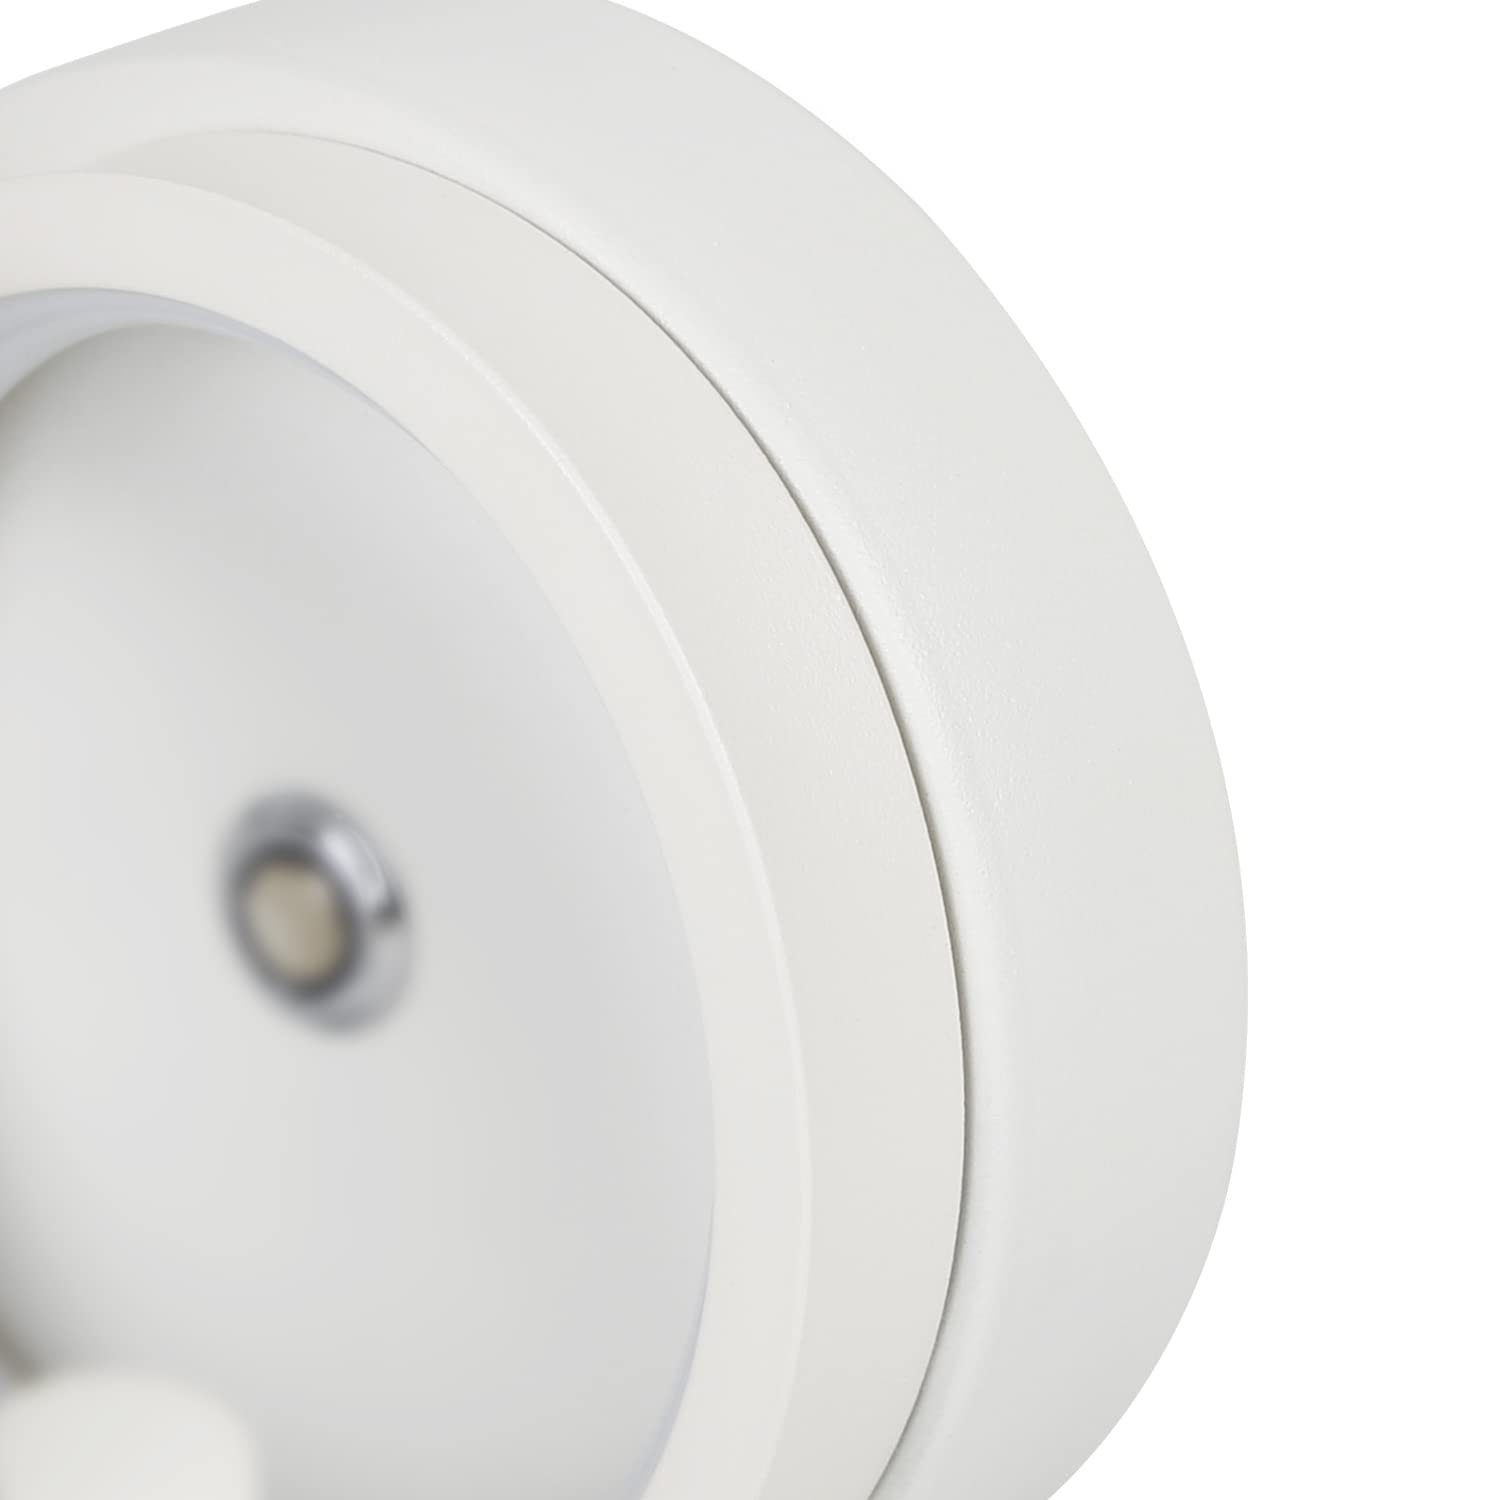 ZMH LED Tischleuchte Nachttischlampe 12W Modern Weiß Wohnzimmer Dimmbare fest Spiralförmig, warmweiß-kaltweiß, LED Berührungsschalter, integriert